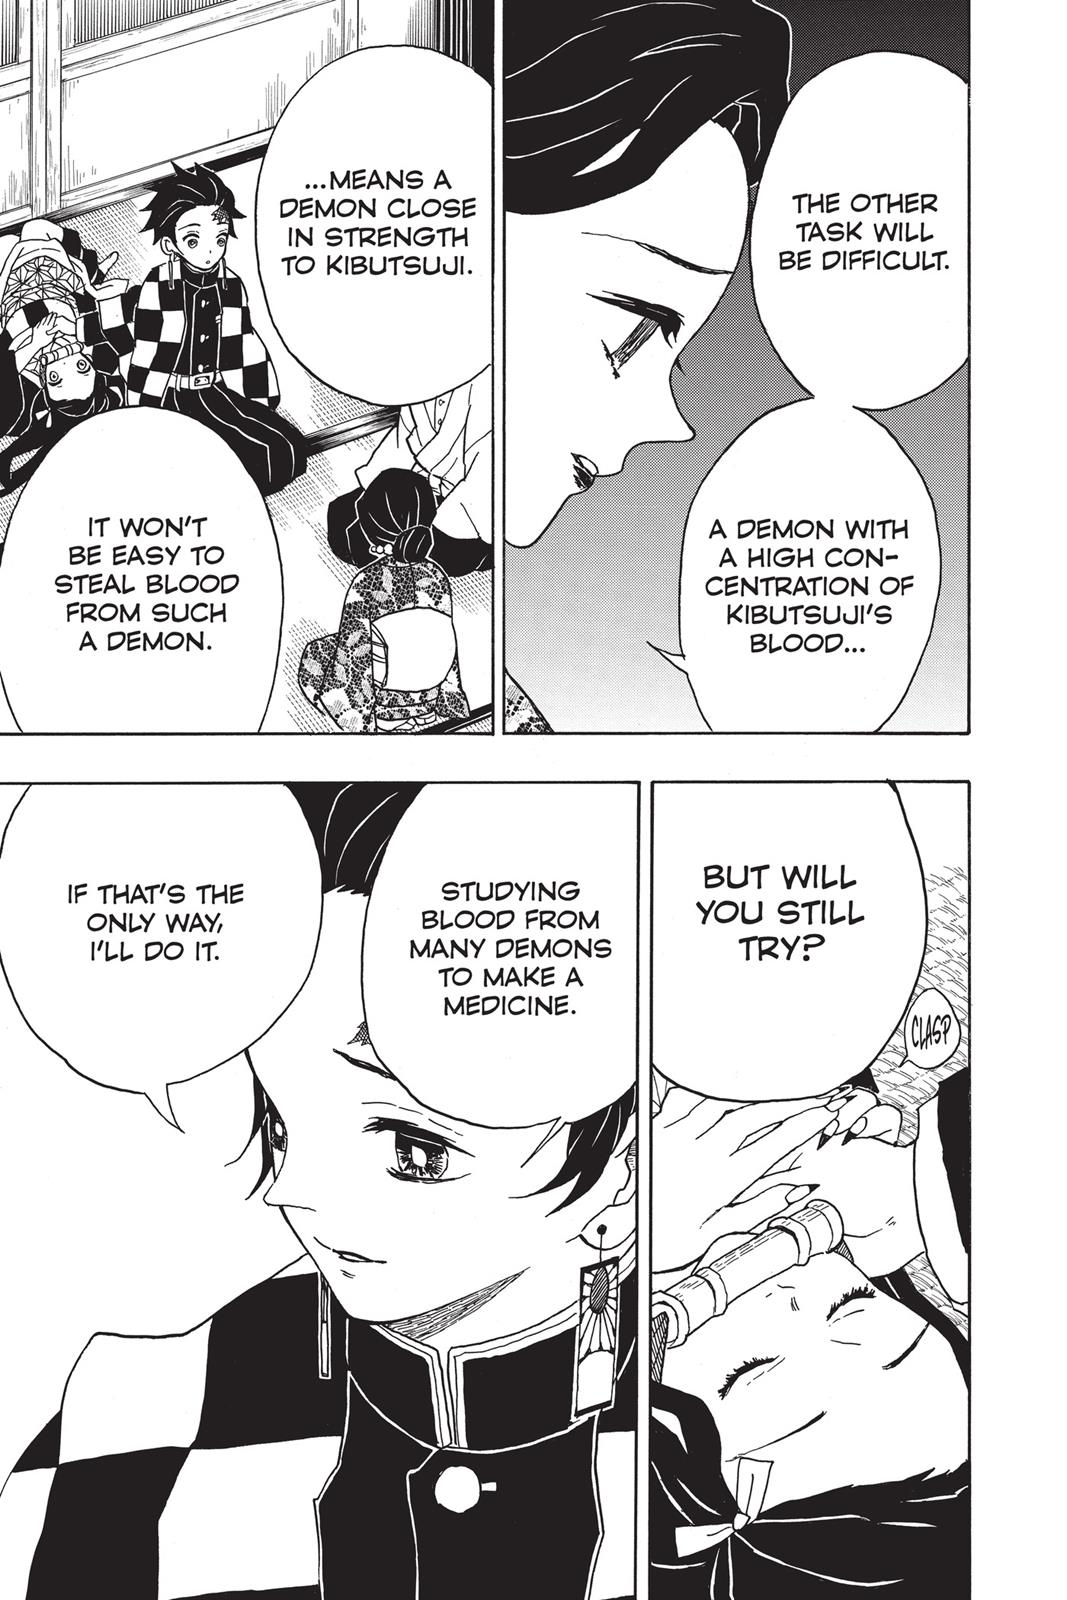 Demon Slayer Manga Manga Chapter - 15 - image 16